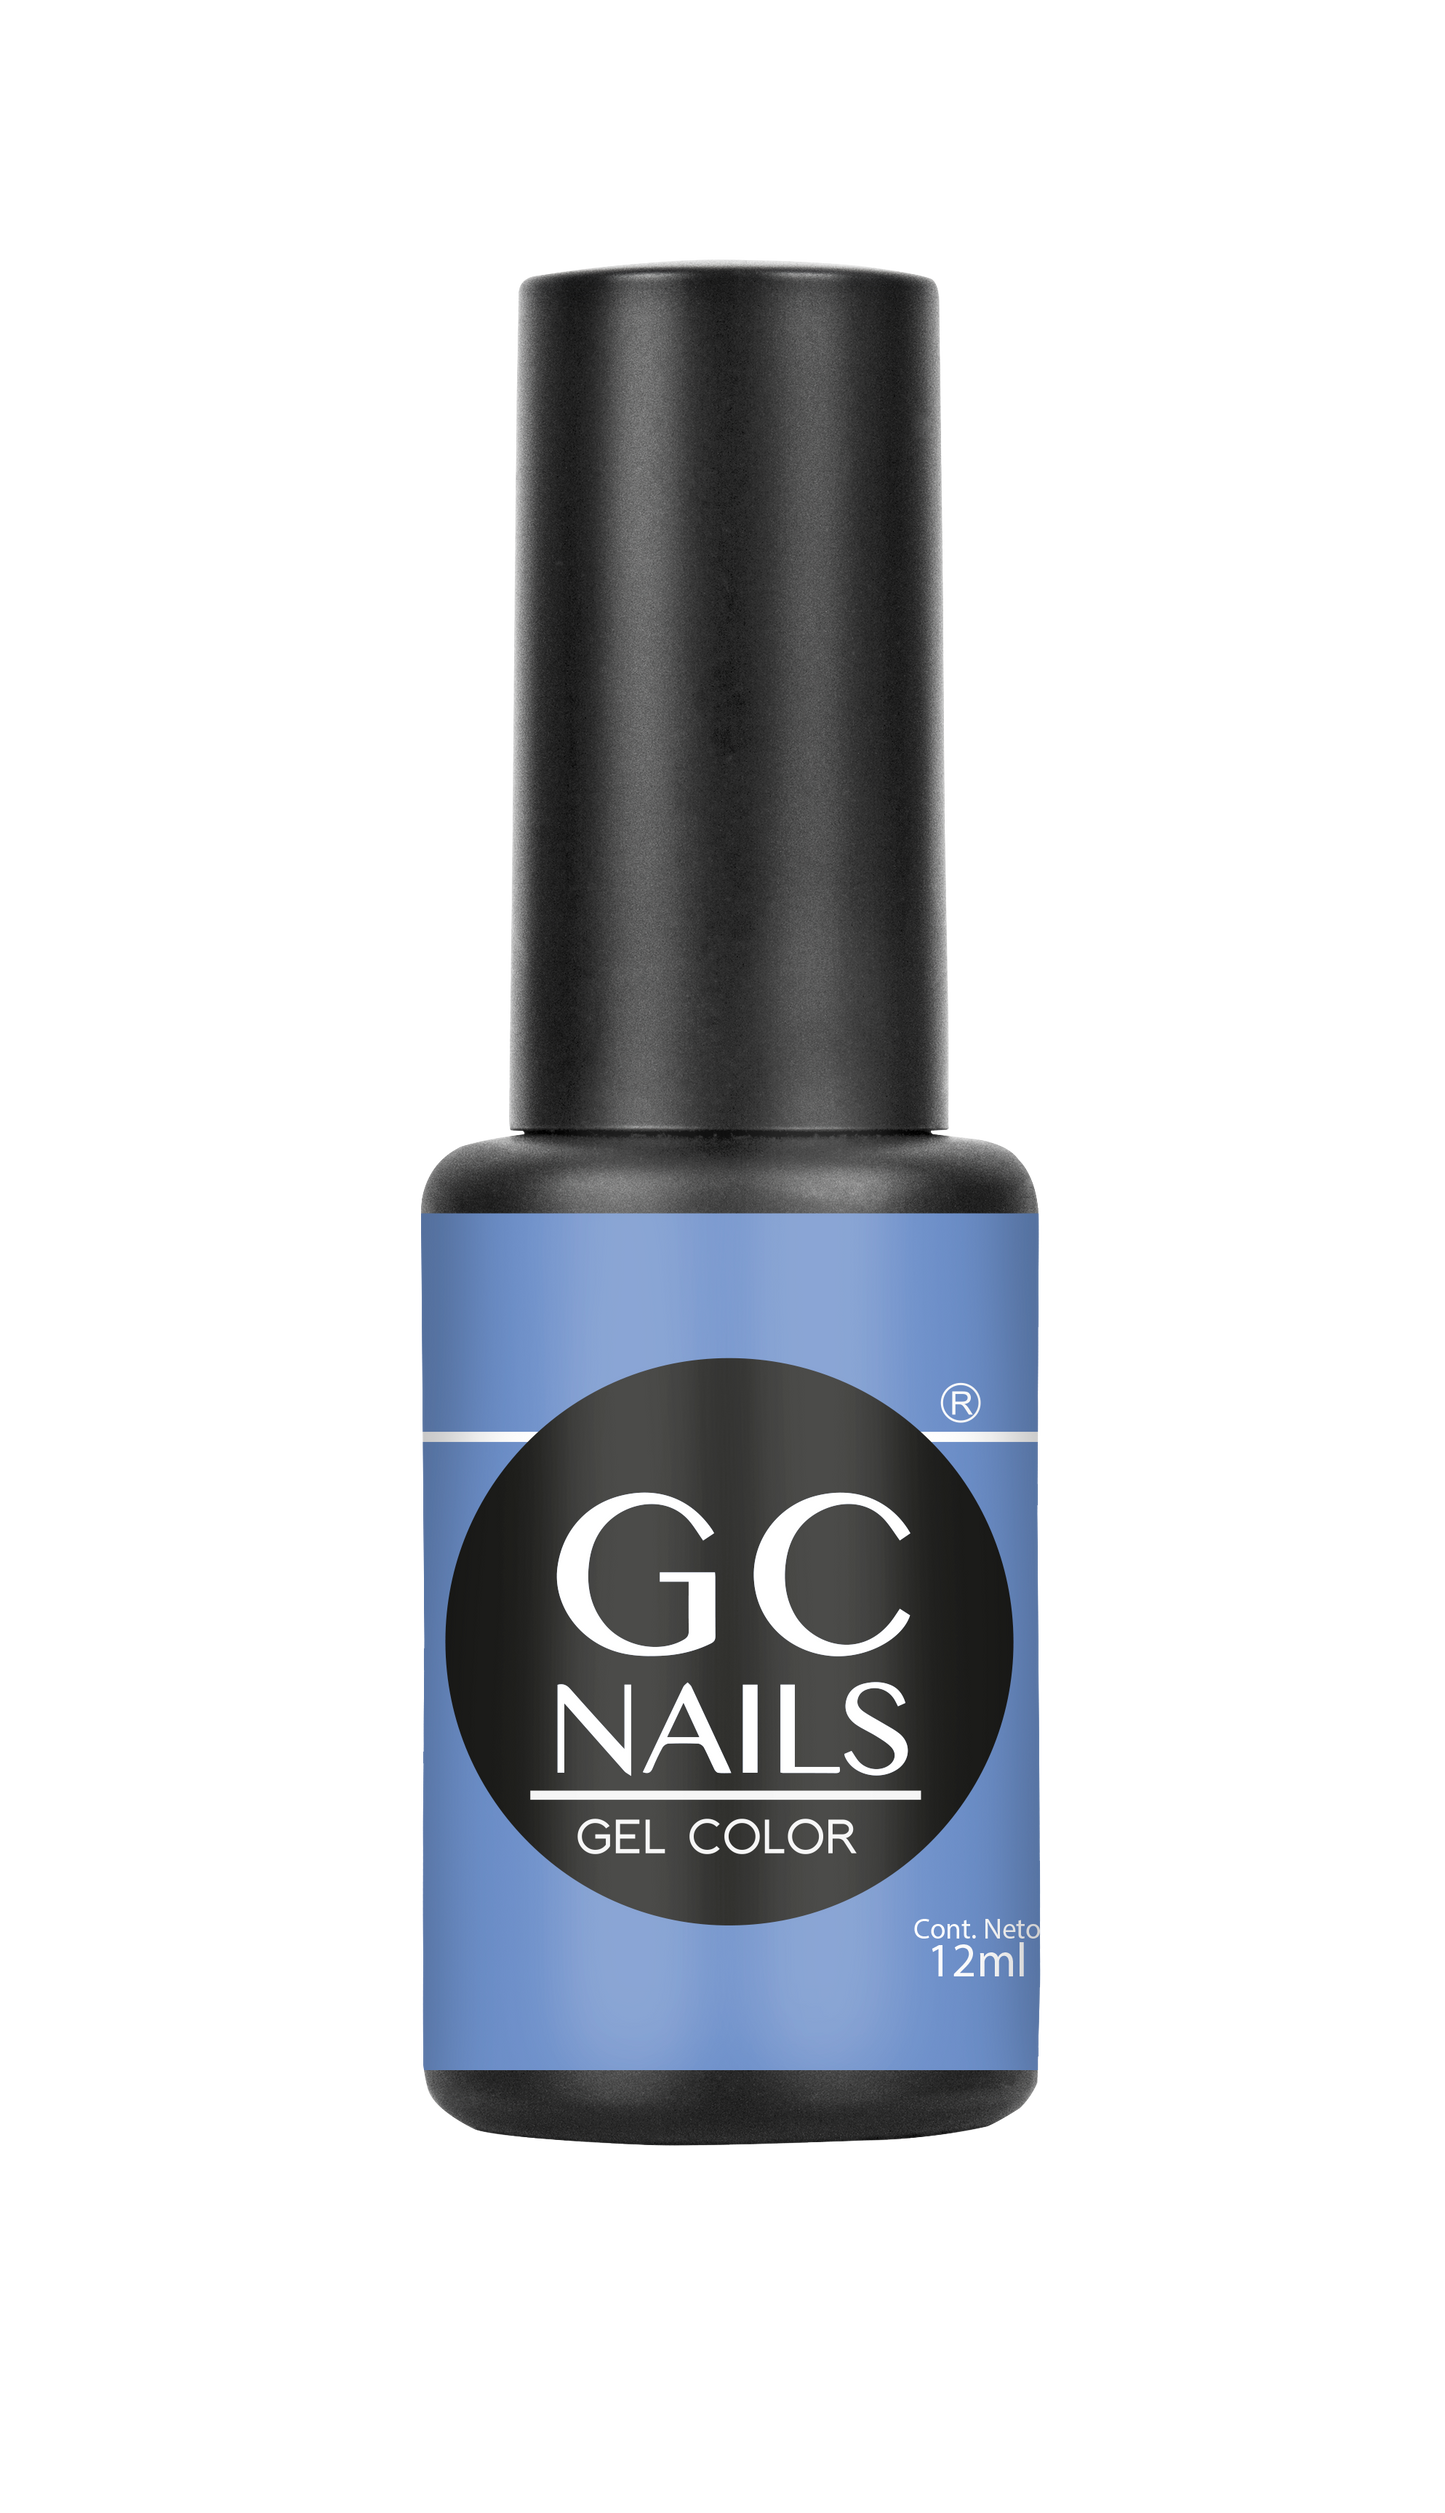 GC nails bel-color 12ml ATLANTIDA 51